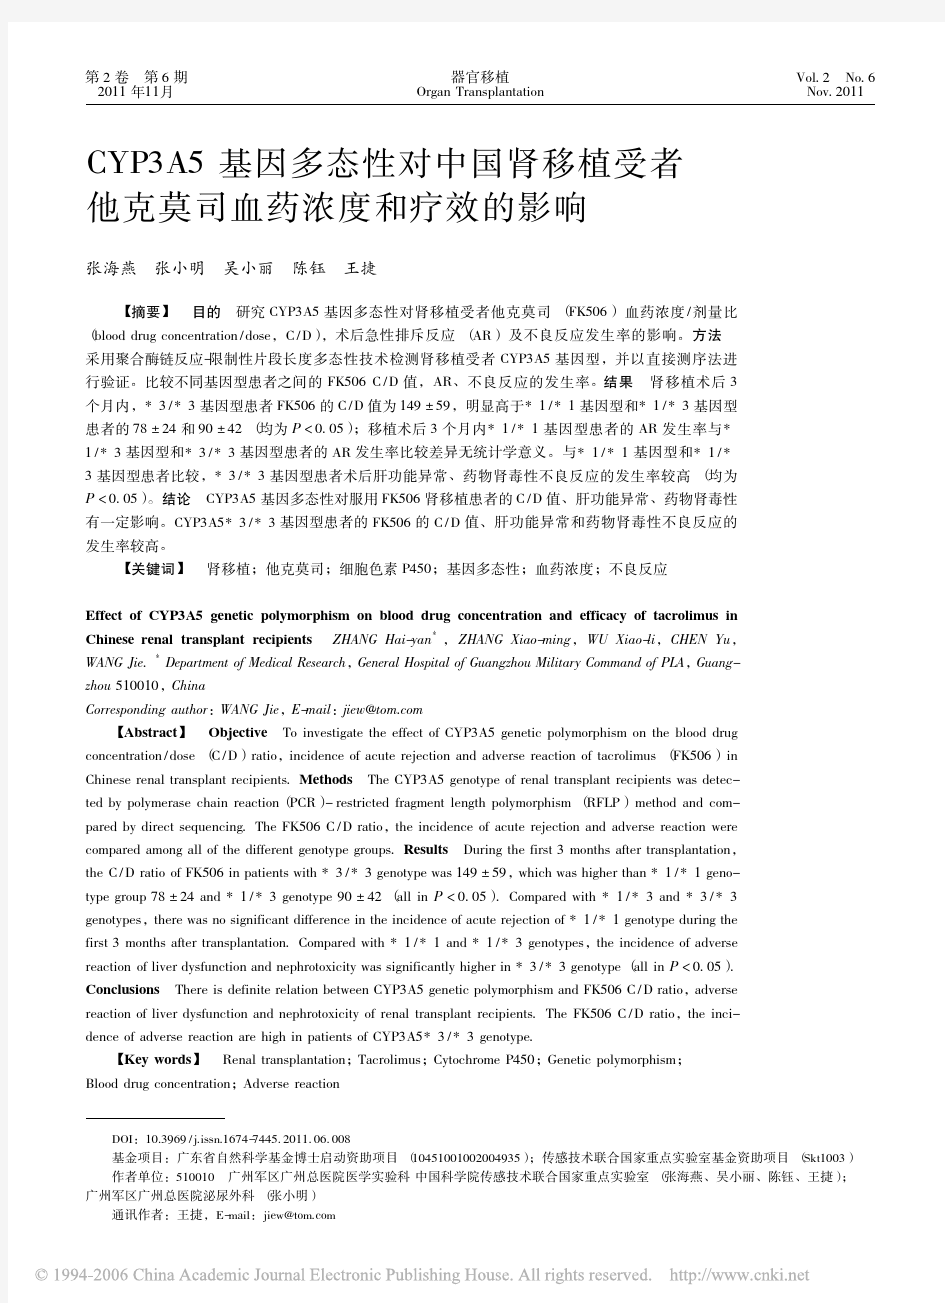 CYP3A5基因多态性对中国肾移植受者他克莫司血药浓度和疗效的影响